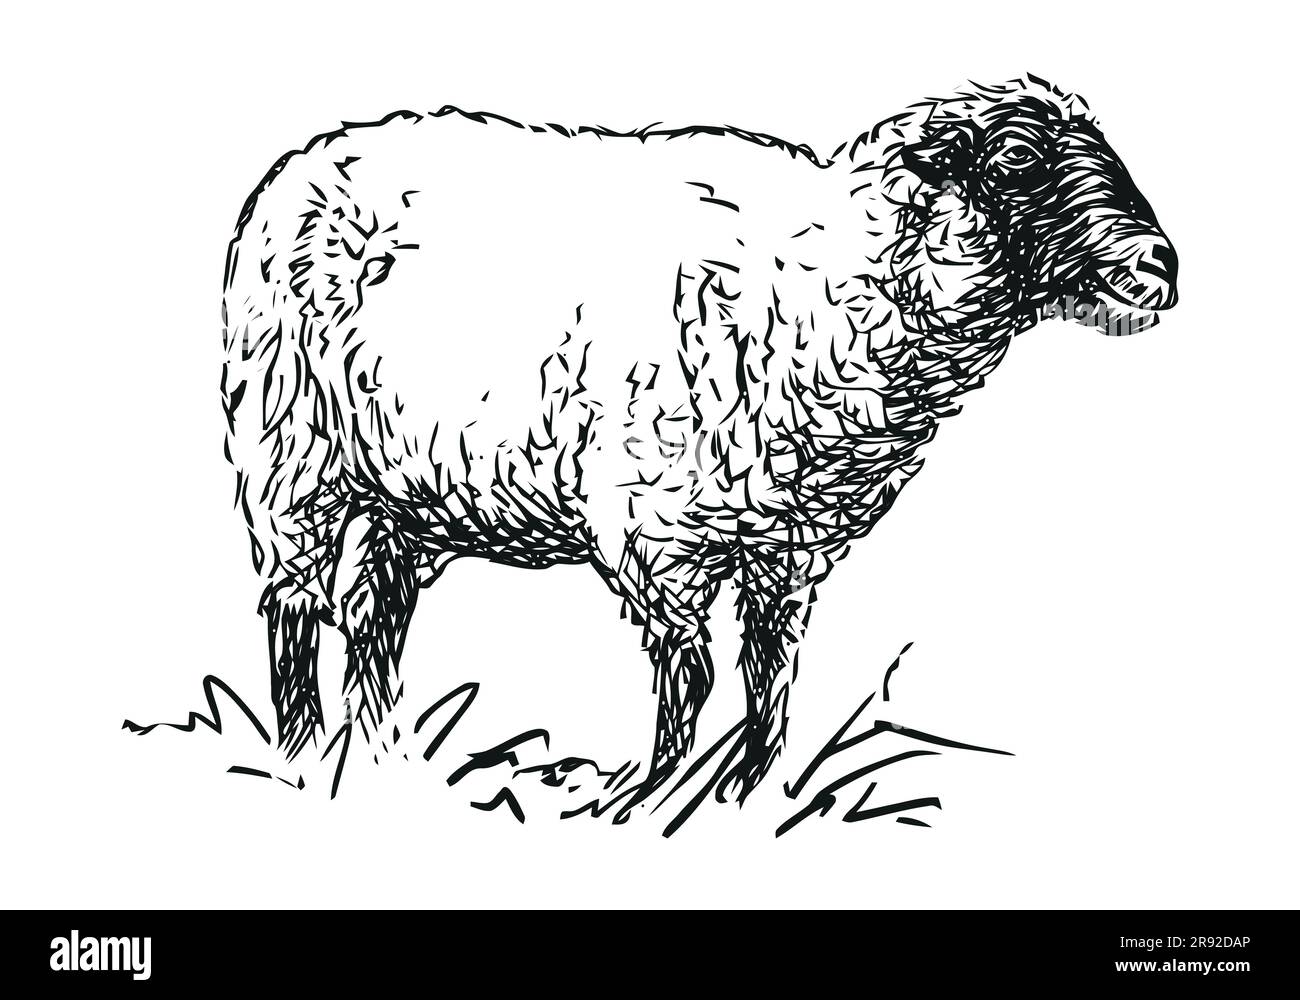 Schafe - Nutztier, handgezeichnete schwarz-weiße Vektordarstellung, isoliert auf weißem Hintergrund Stock Vektor